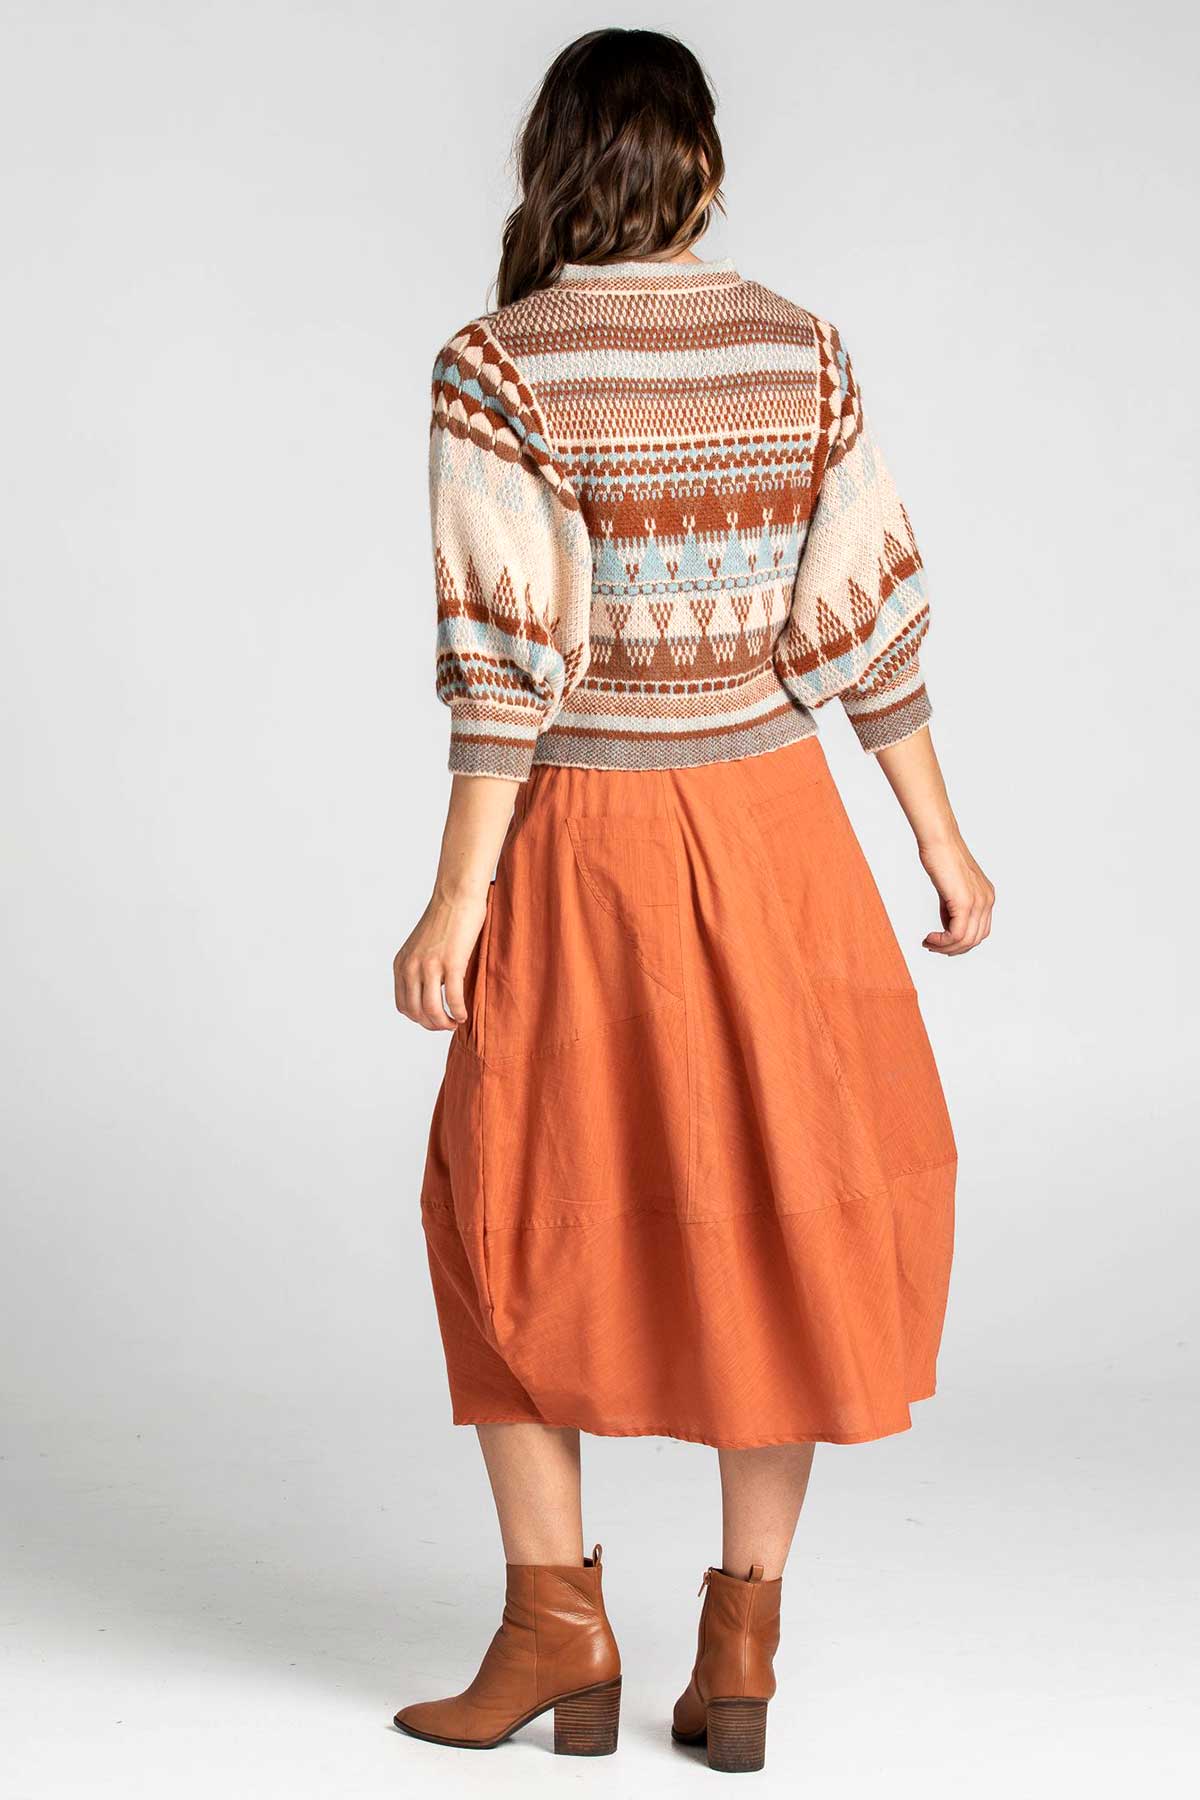 Boom Shankar Winter Guru Skirt - Rust, 2 front and back pockets.